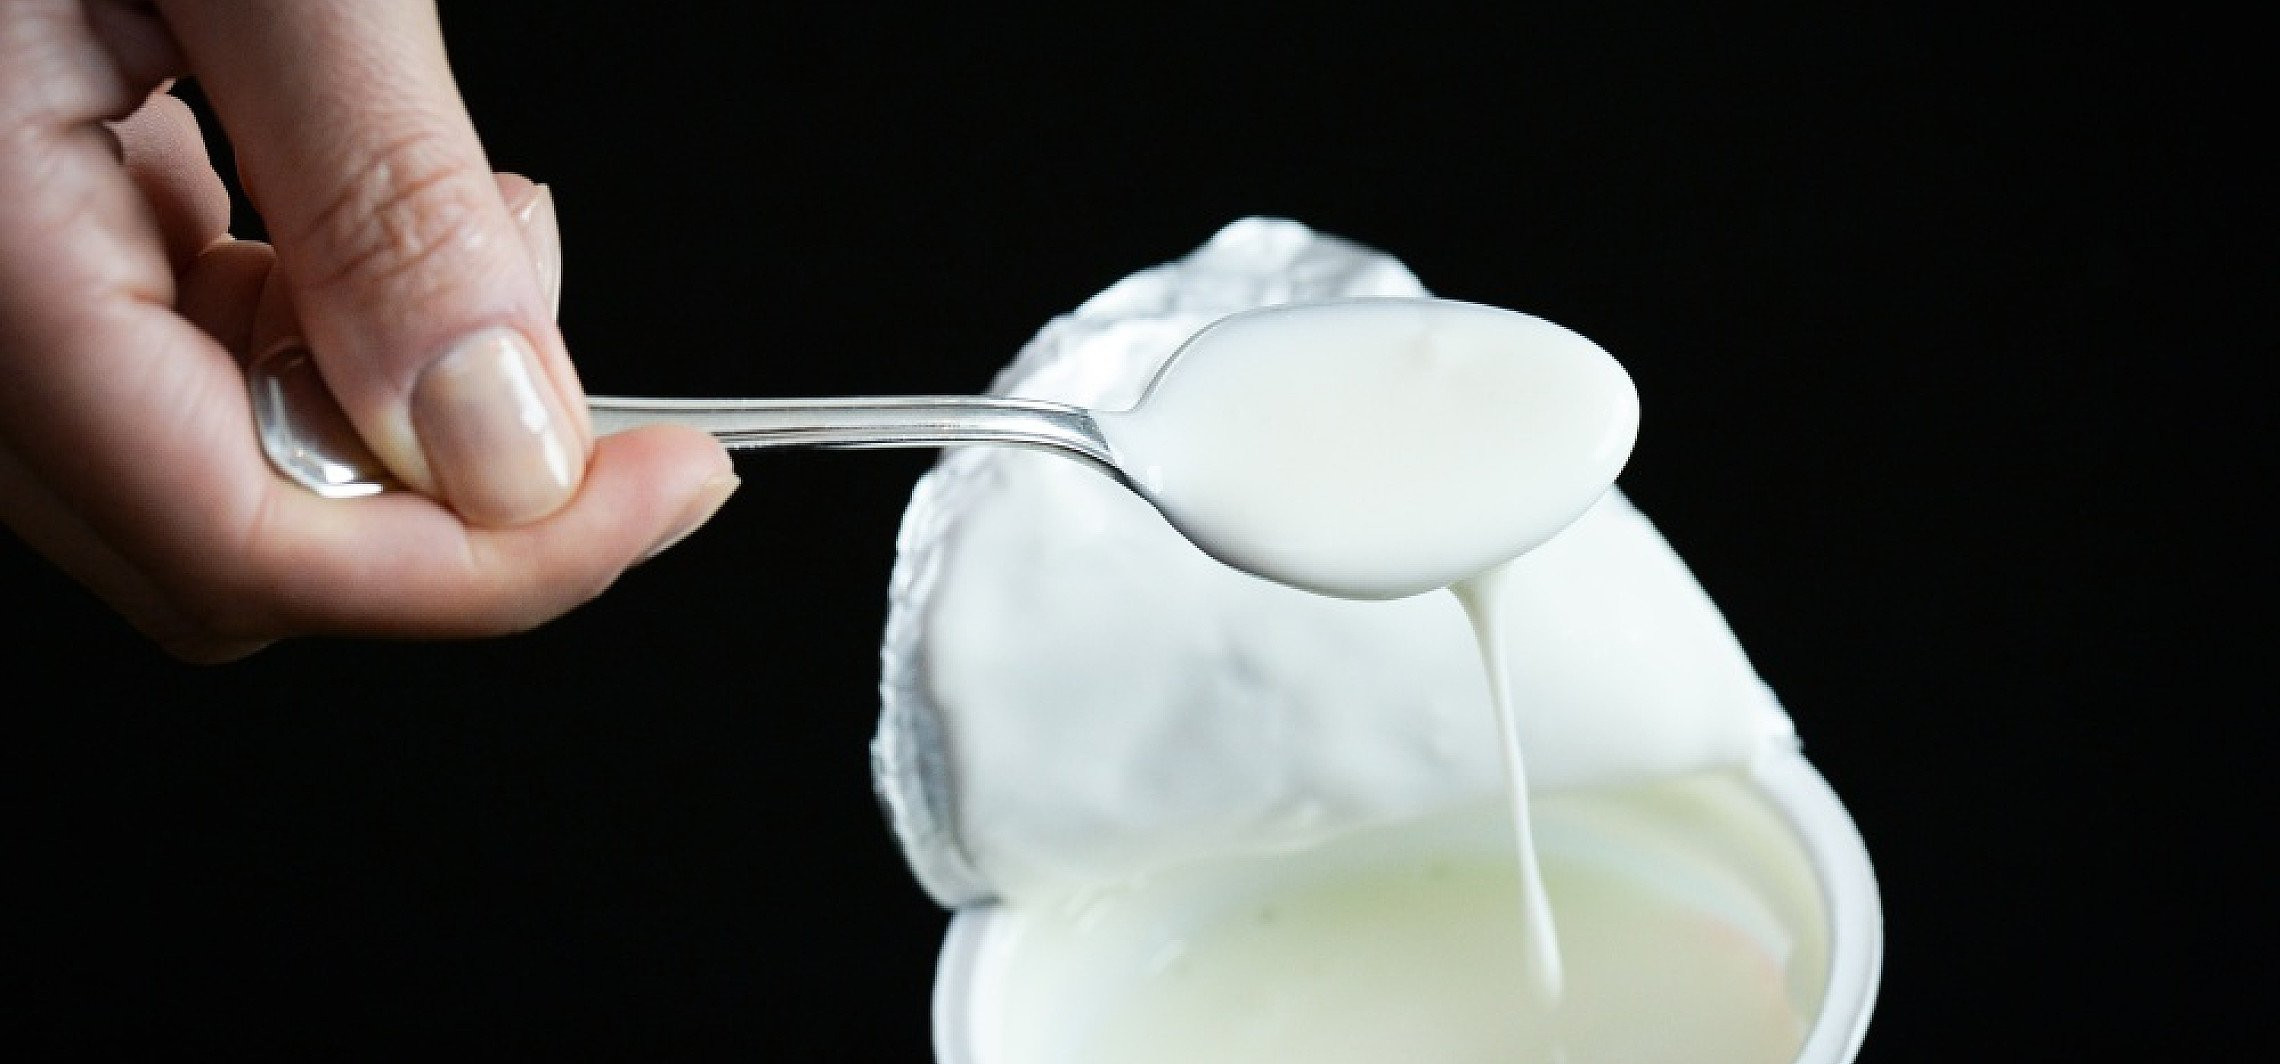 Świat - Jogurt i błonnik chronią przed rakiem płuc